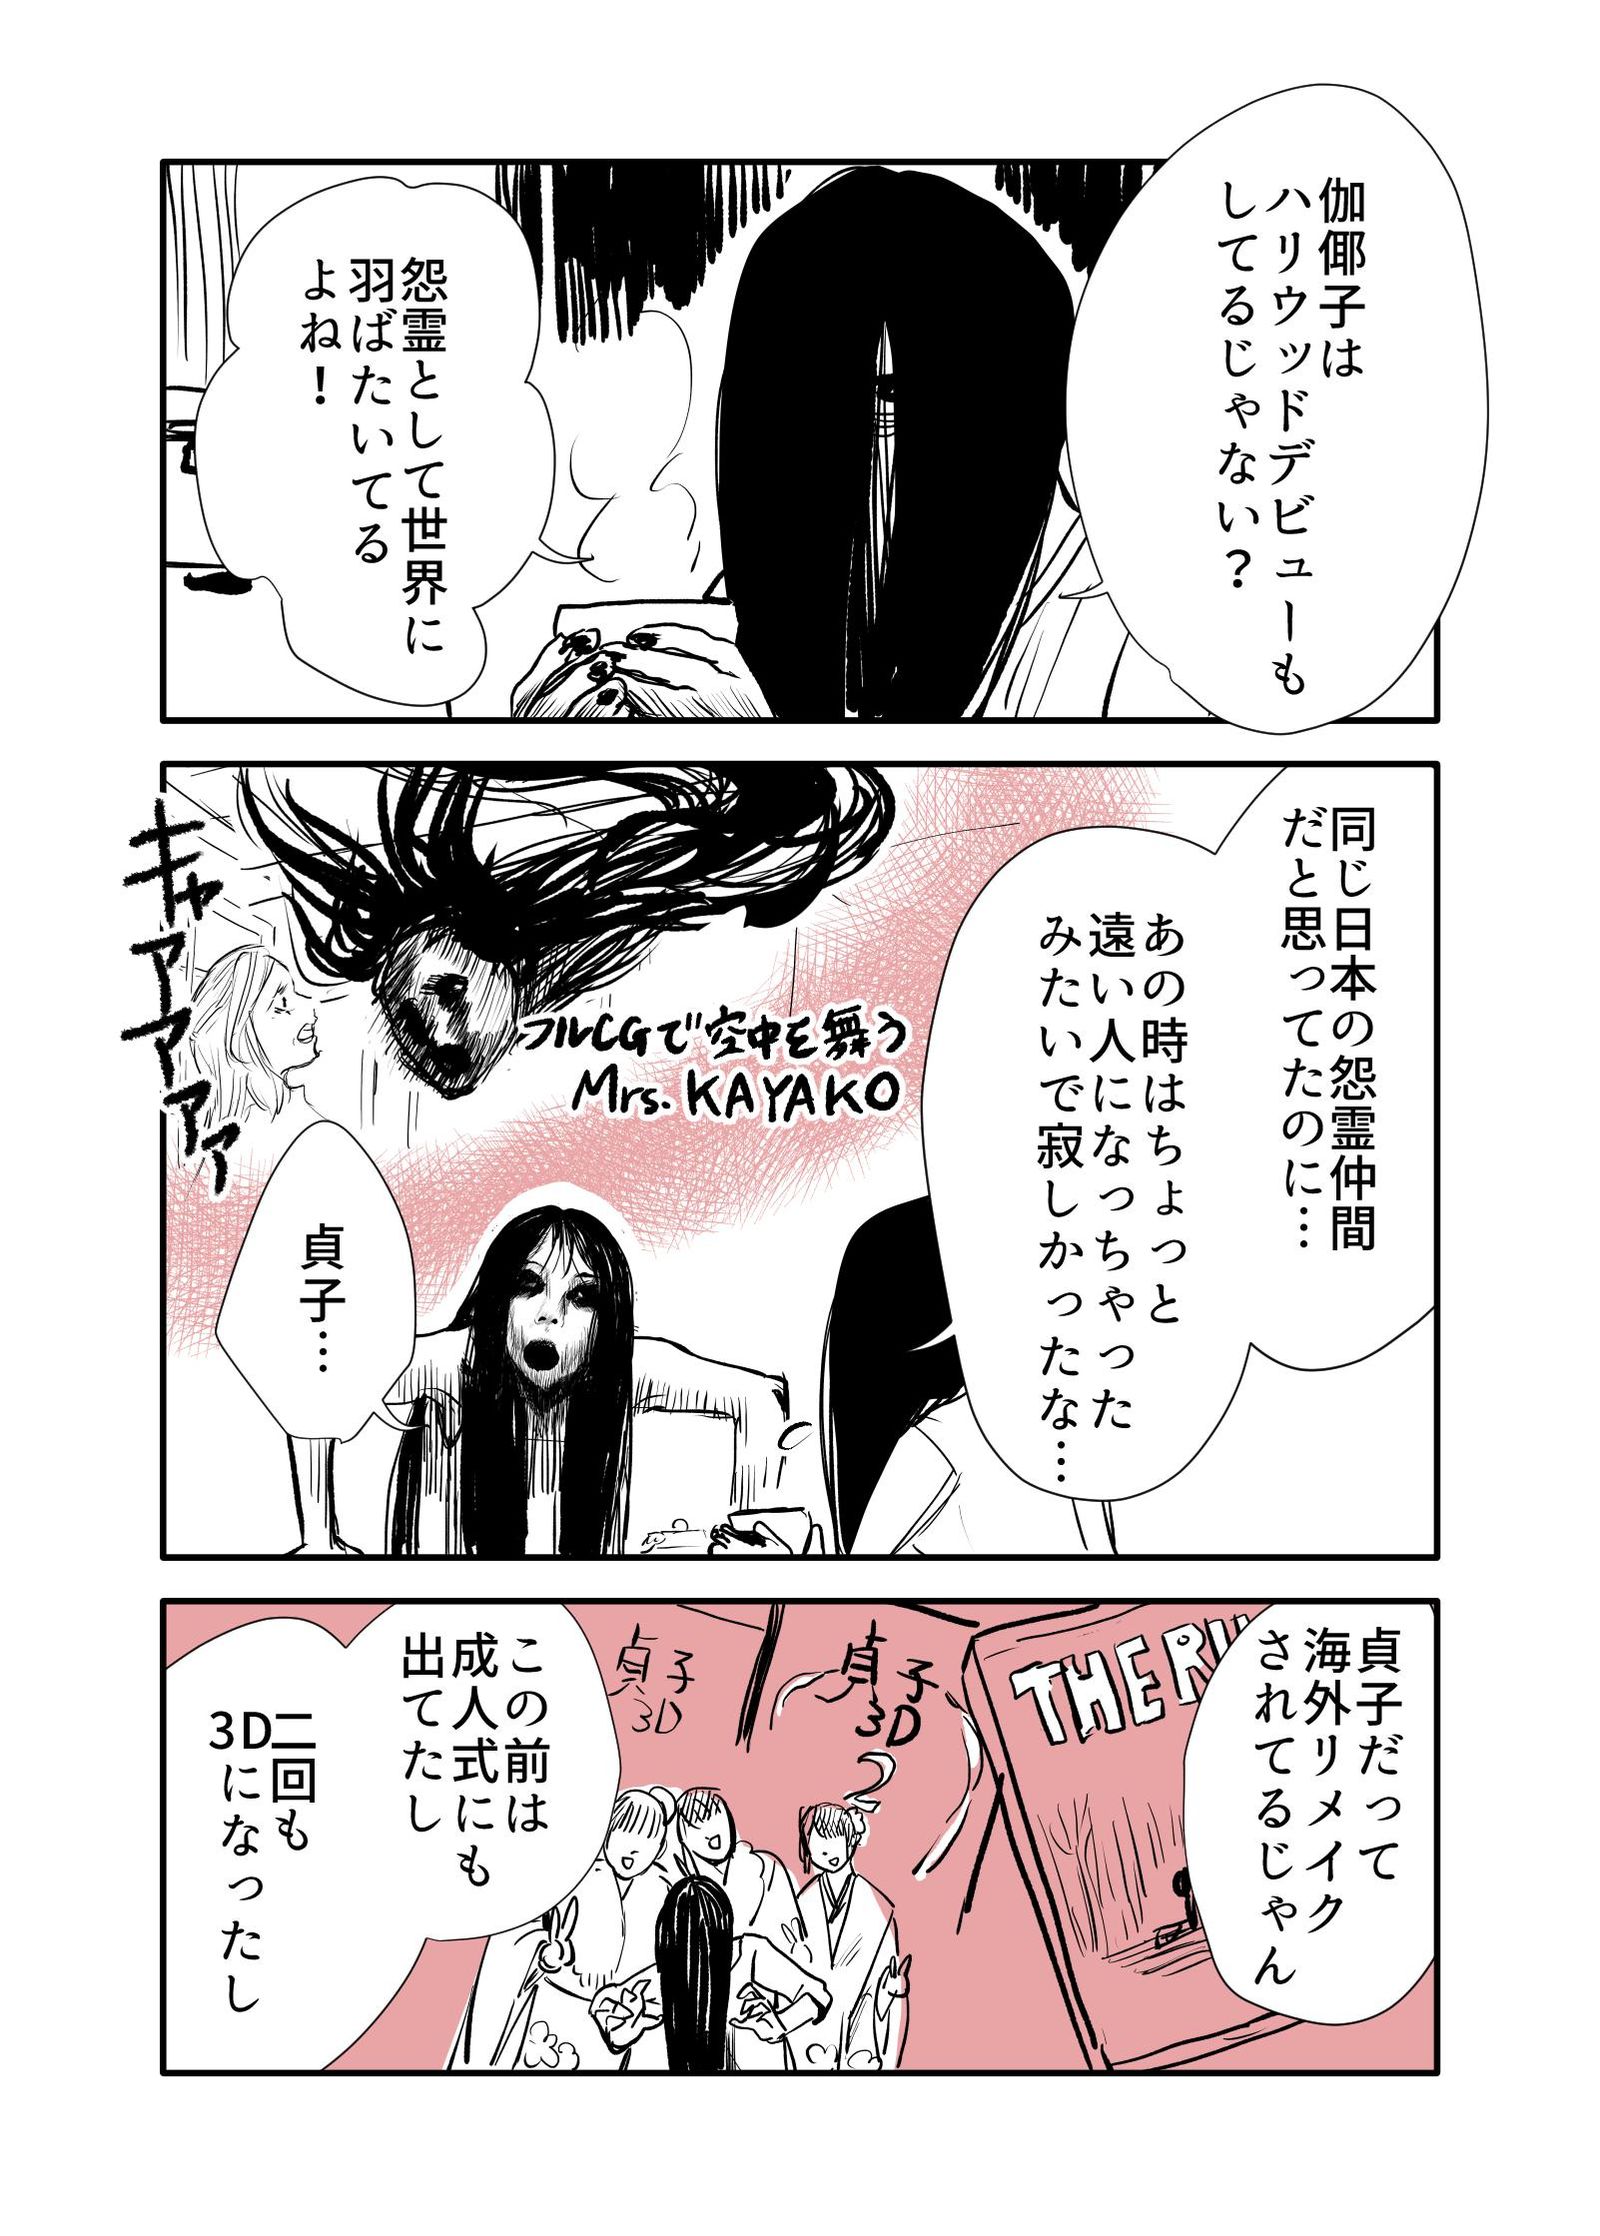 贞子和闲谈解闷闷的孩子参加女子会的噱头漫画2【注意微恐怖】